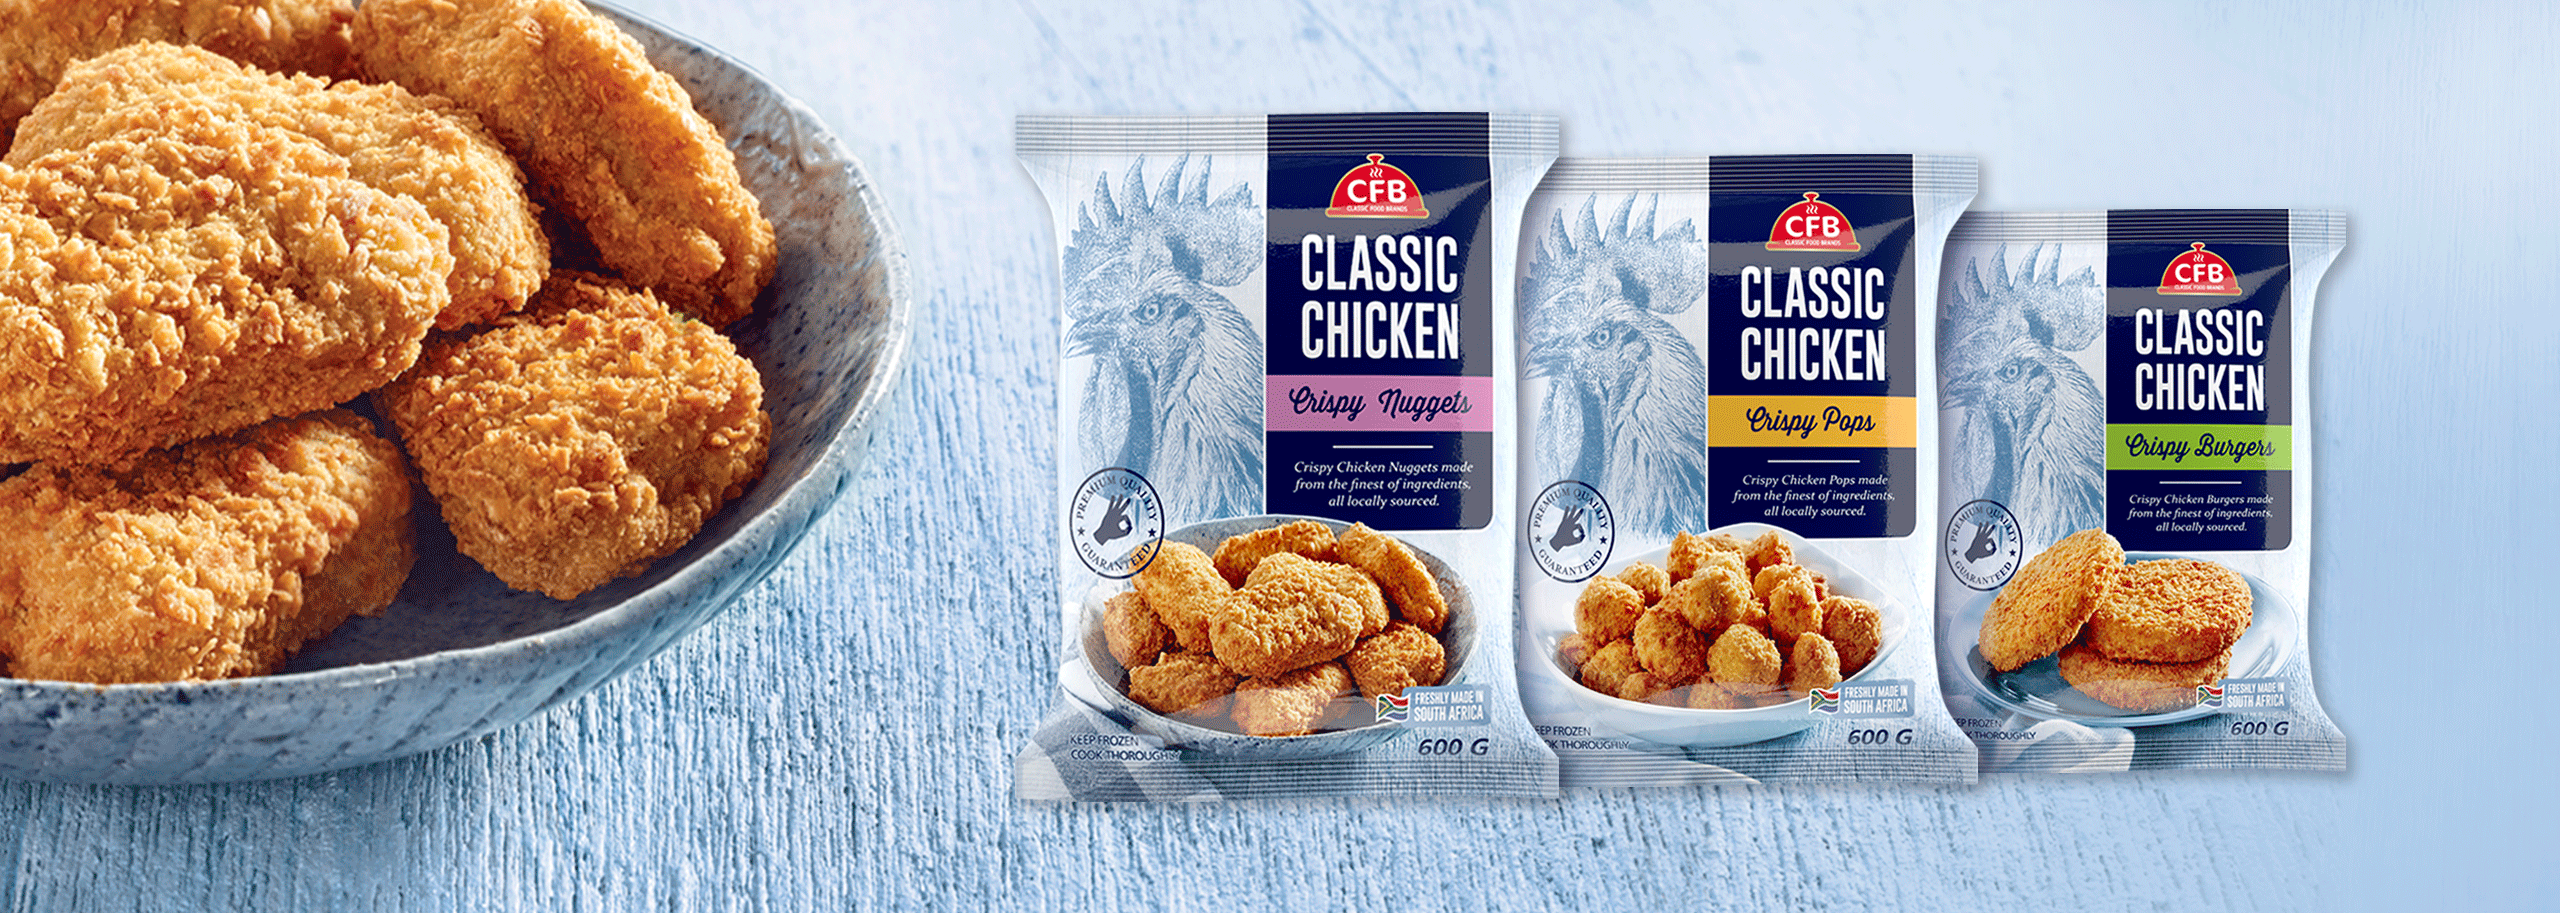 CFB Crispy Chicken Packaging -1